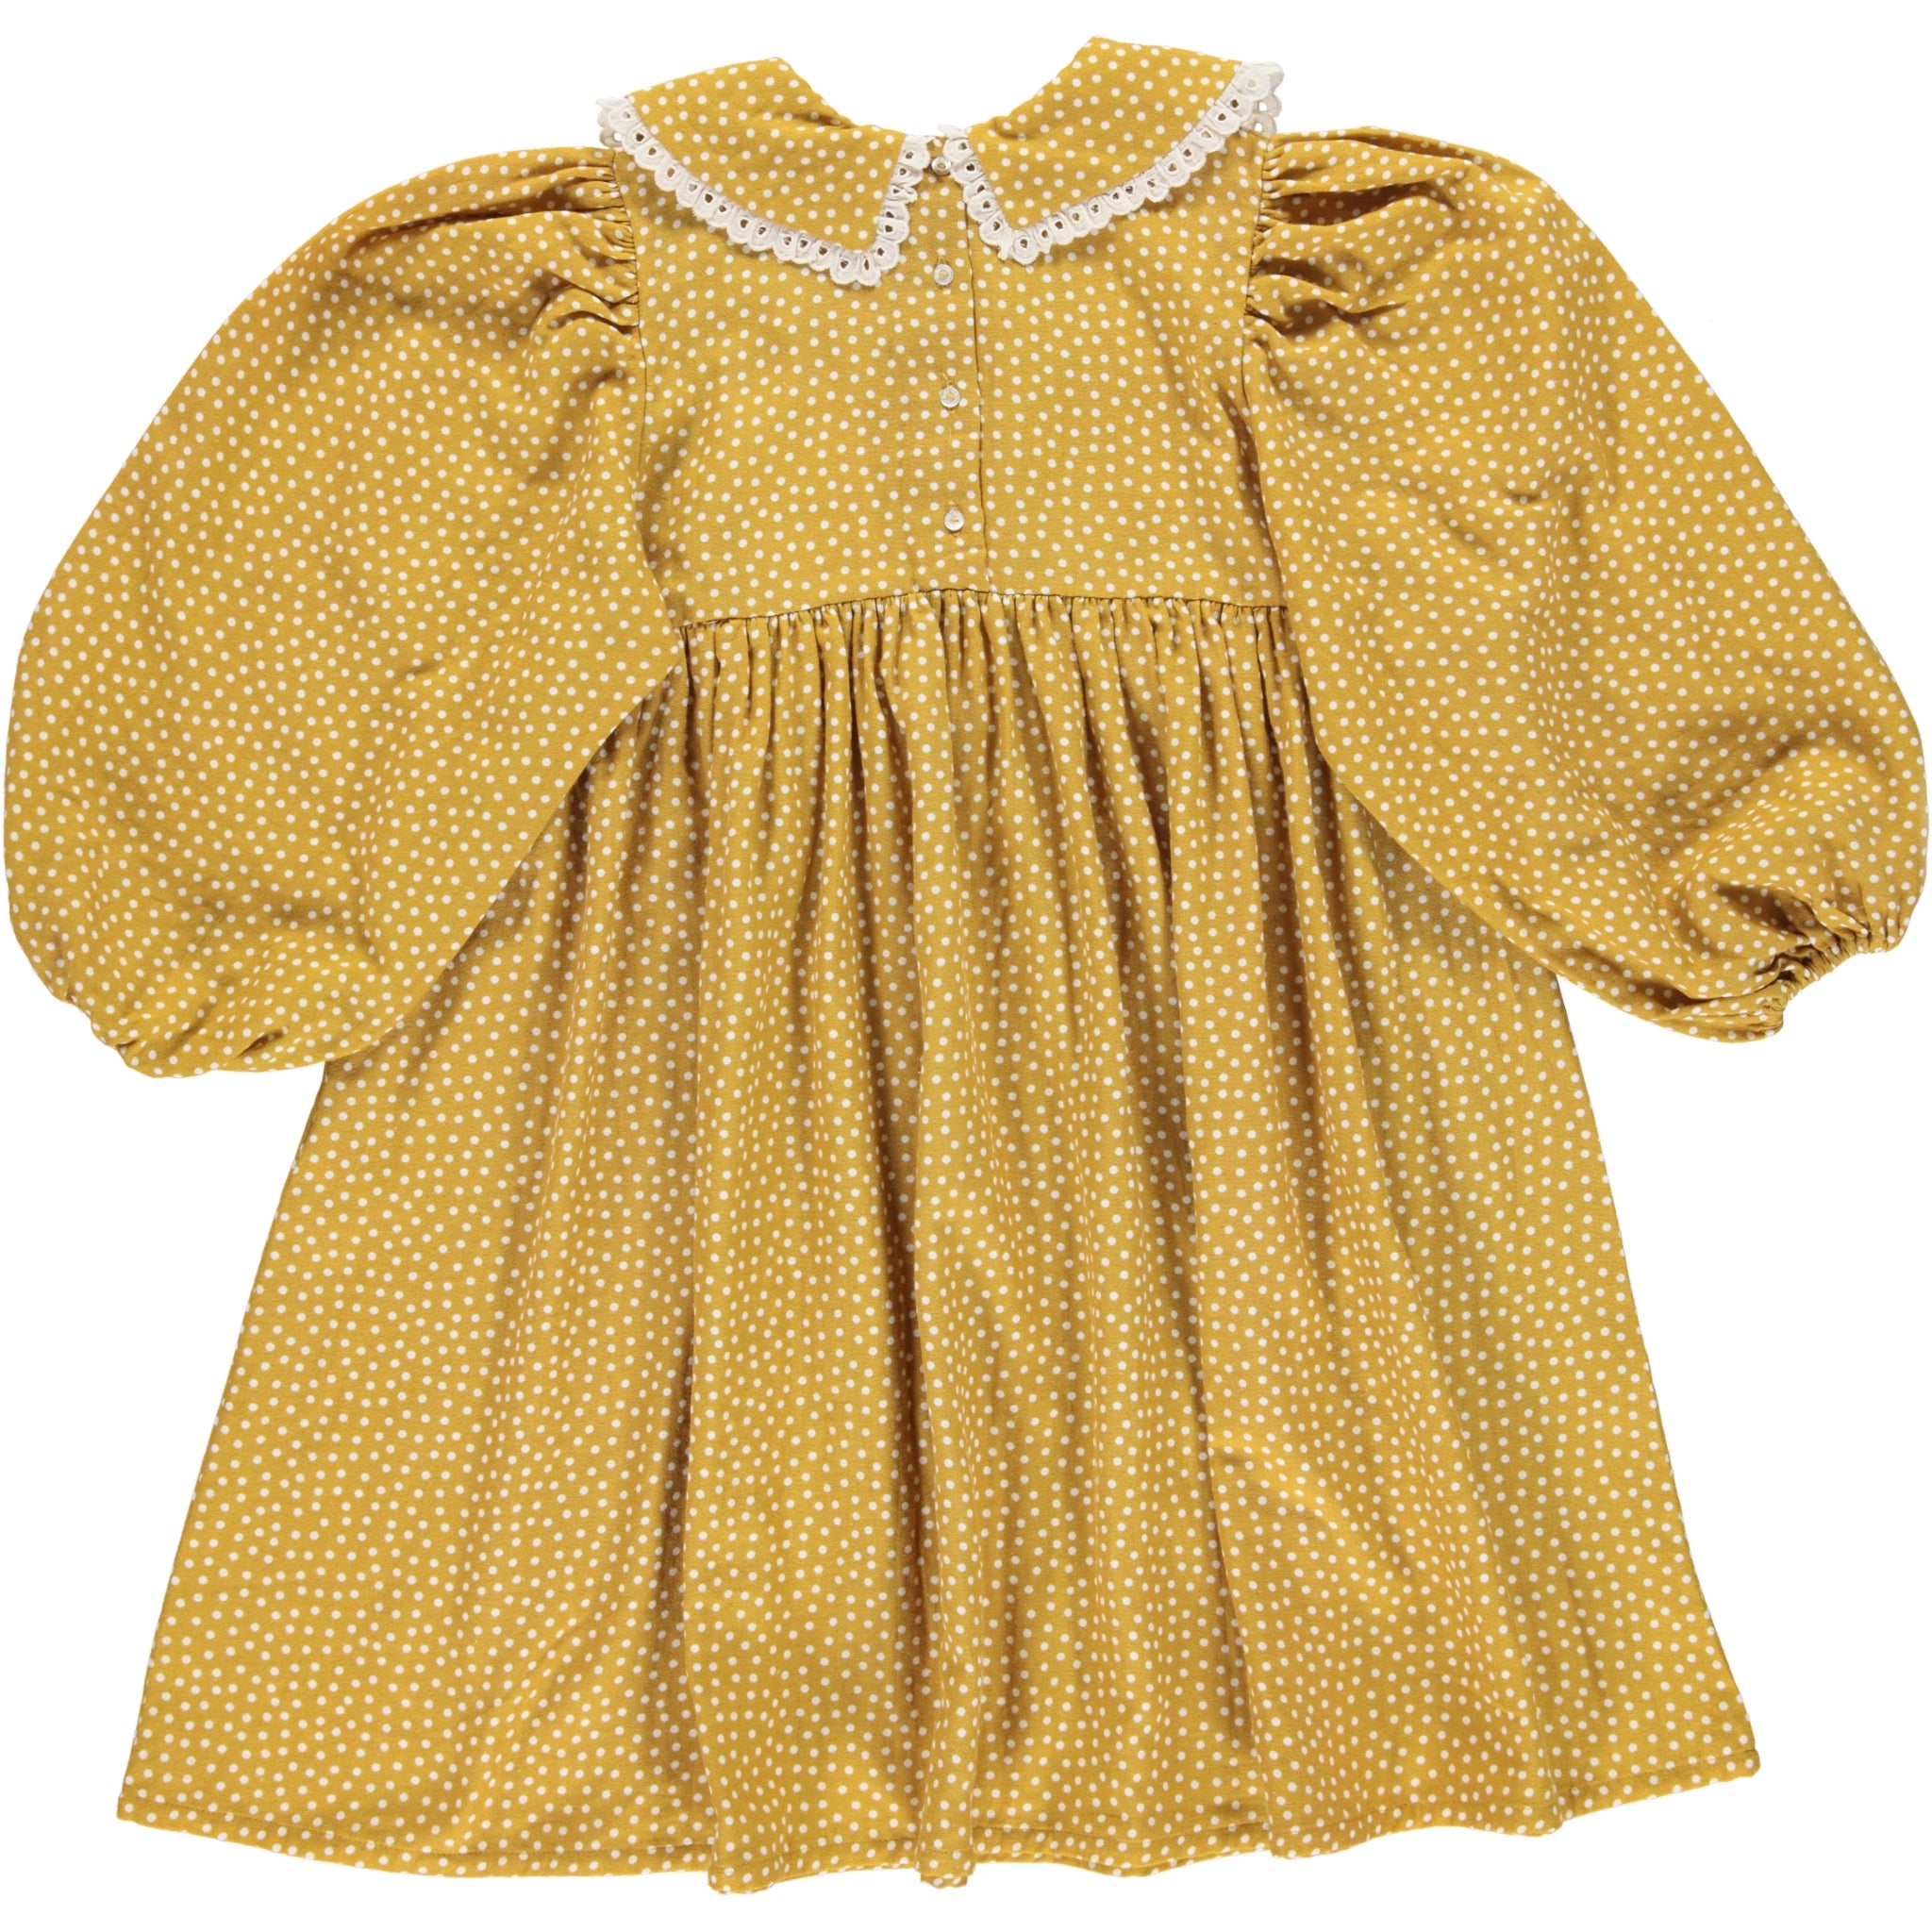 Girls Yellow Dots Cotton Dress